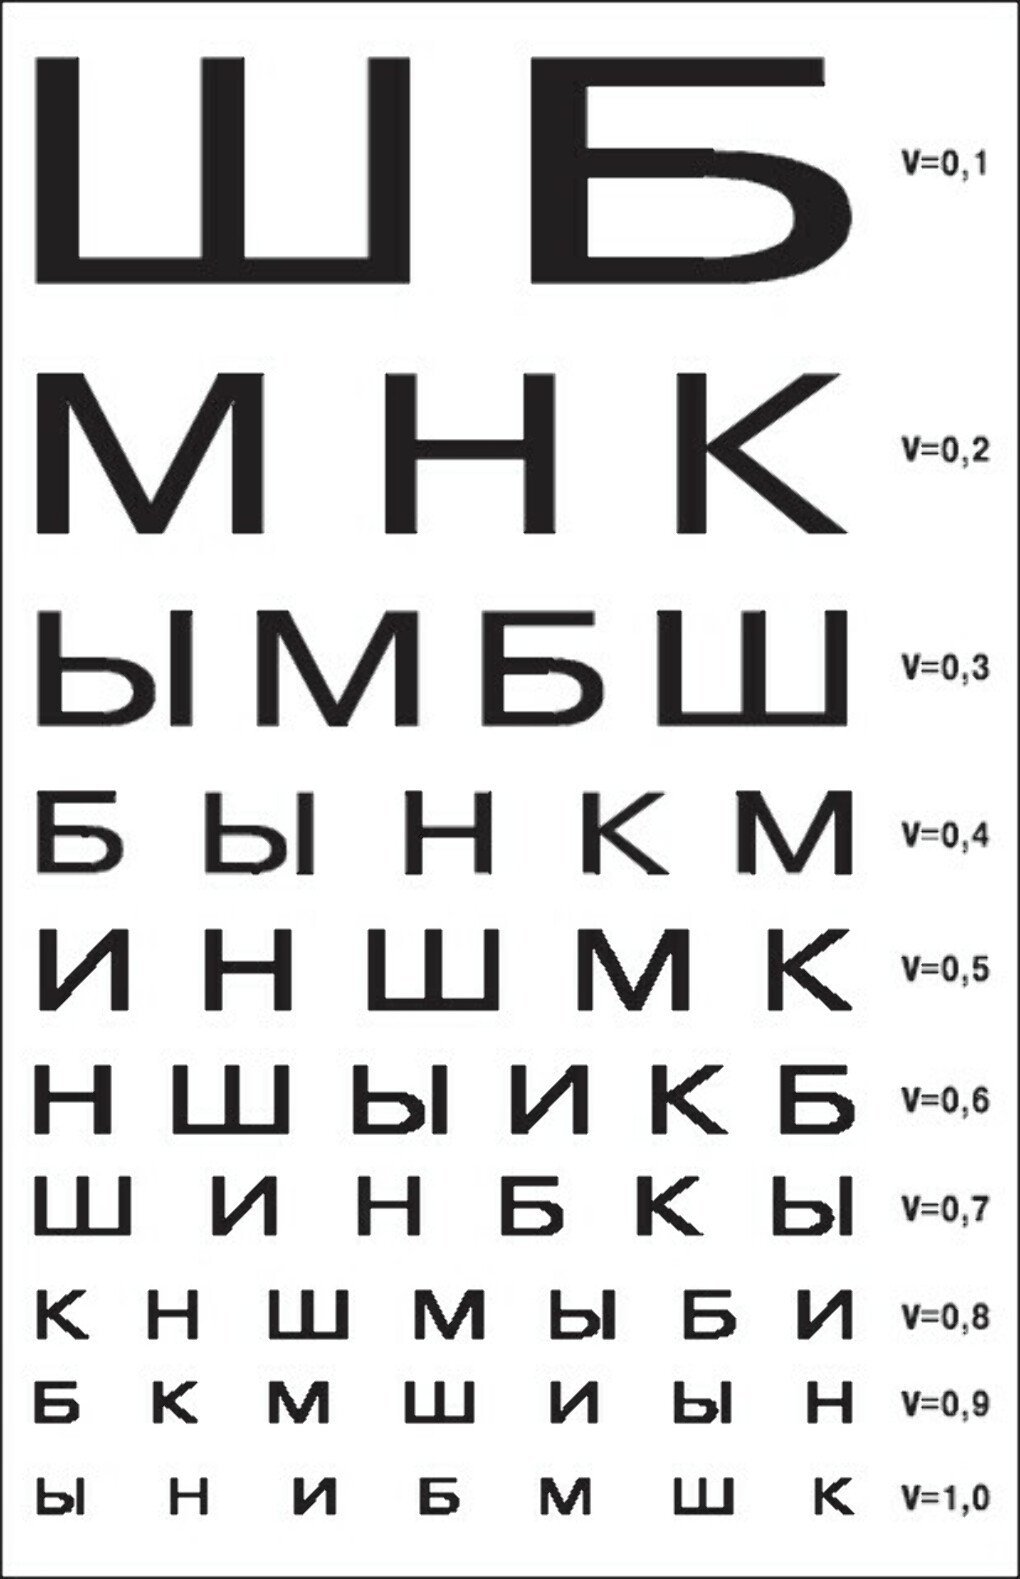 Видеть 3 строку. Как выучить таблицу для проверки зрения у окулиста. Таблица алфавита у глазного врача. Кабинет глазного врача таблица проверки зрения. Таблица ШБ для проверки зрения на а4.